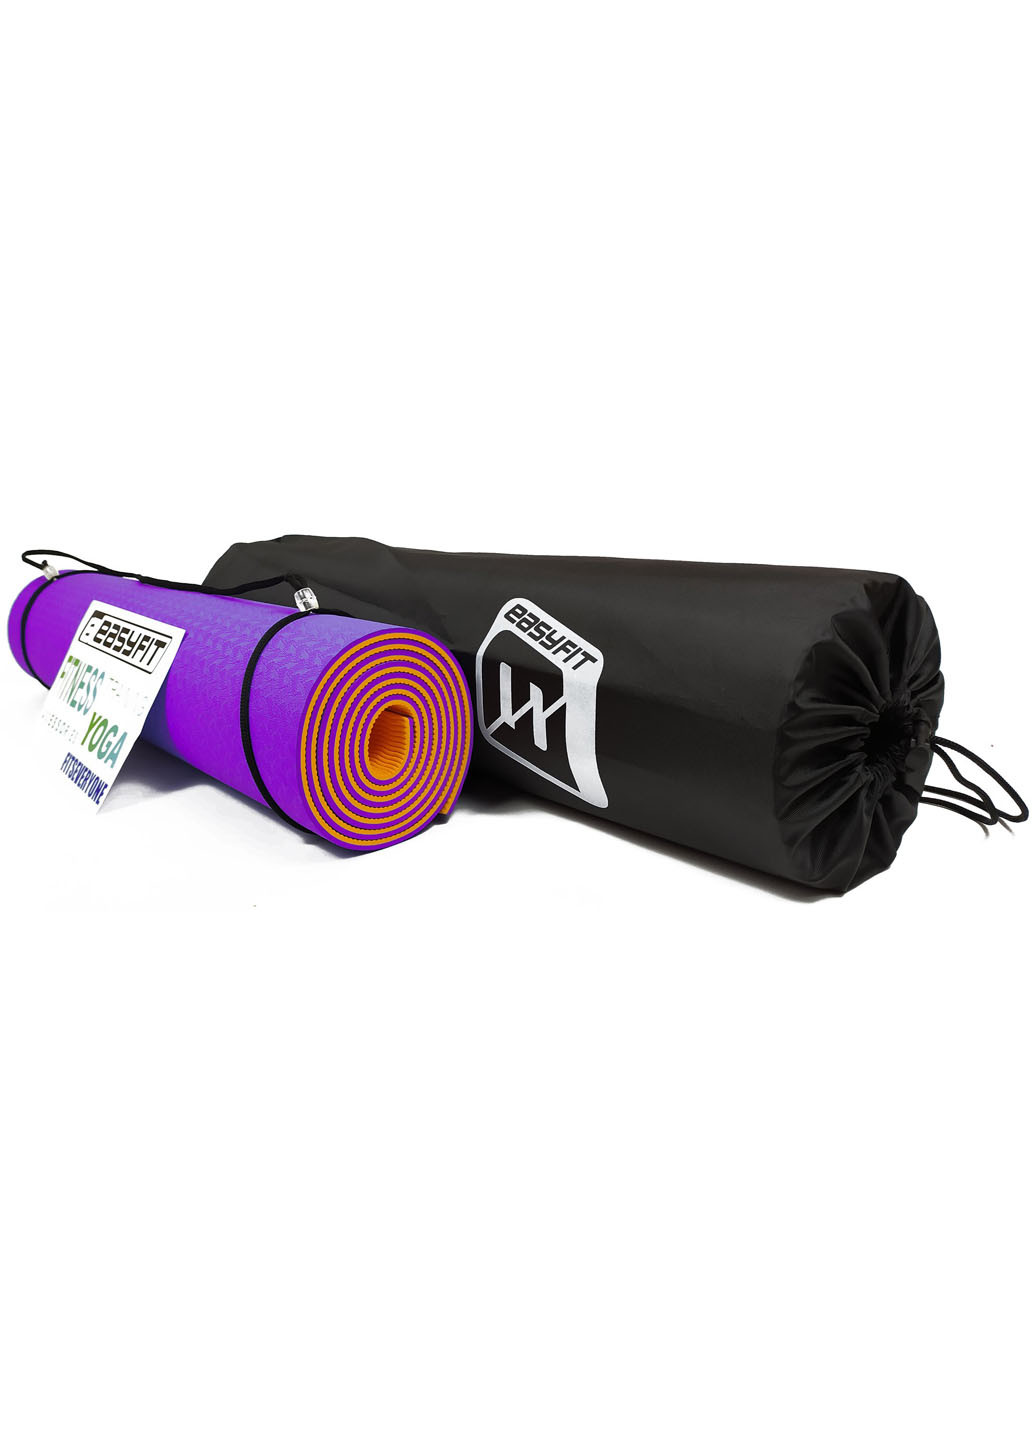 Килимок для йоги TPE + TC ECO-Friendly 6 мм фіолетовий з оранжевим (мат-каремат спортивний, йогамат для фітнесу) EasyFit (237596256)